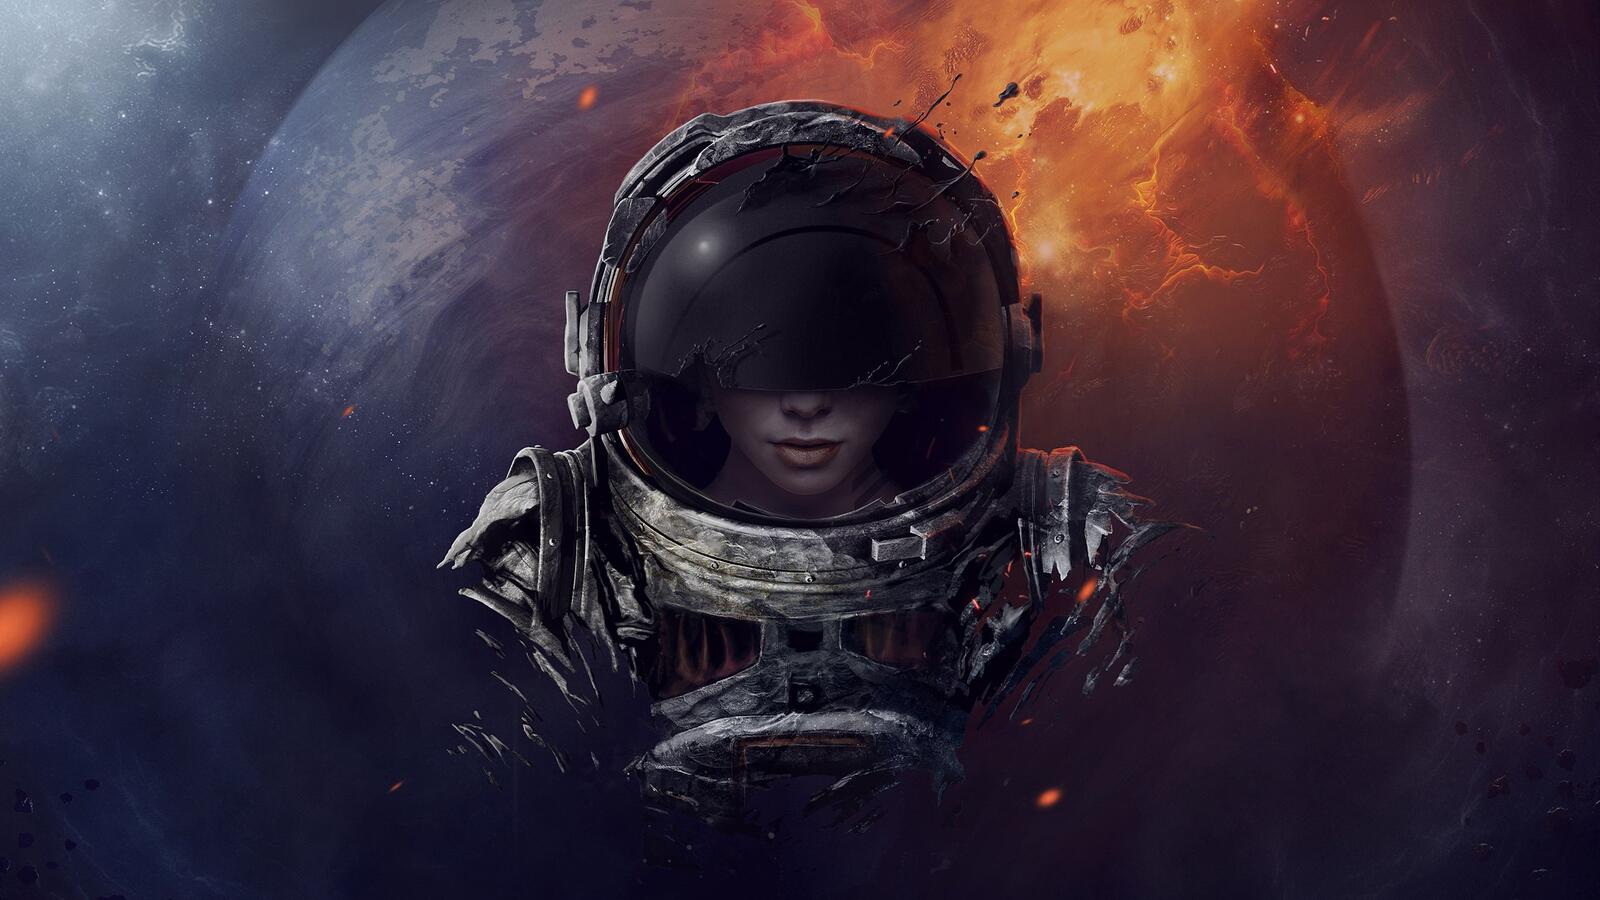 Wallpapers astronaut girl helmet on the desktop